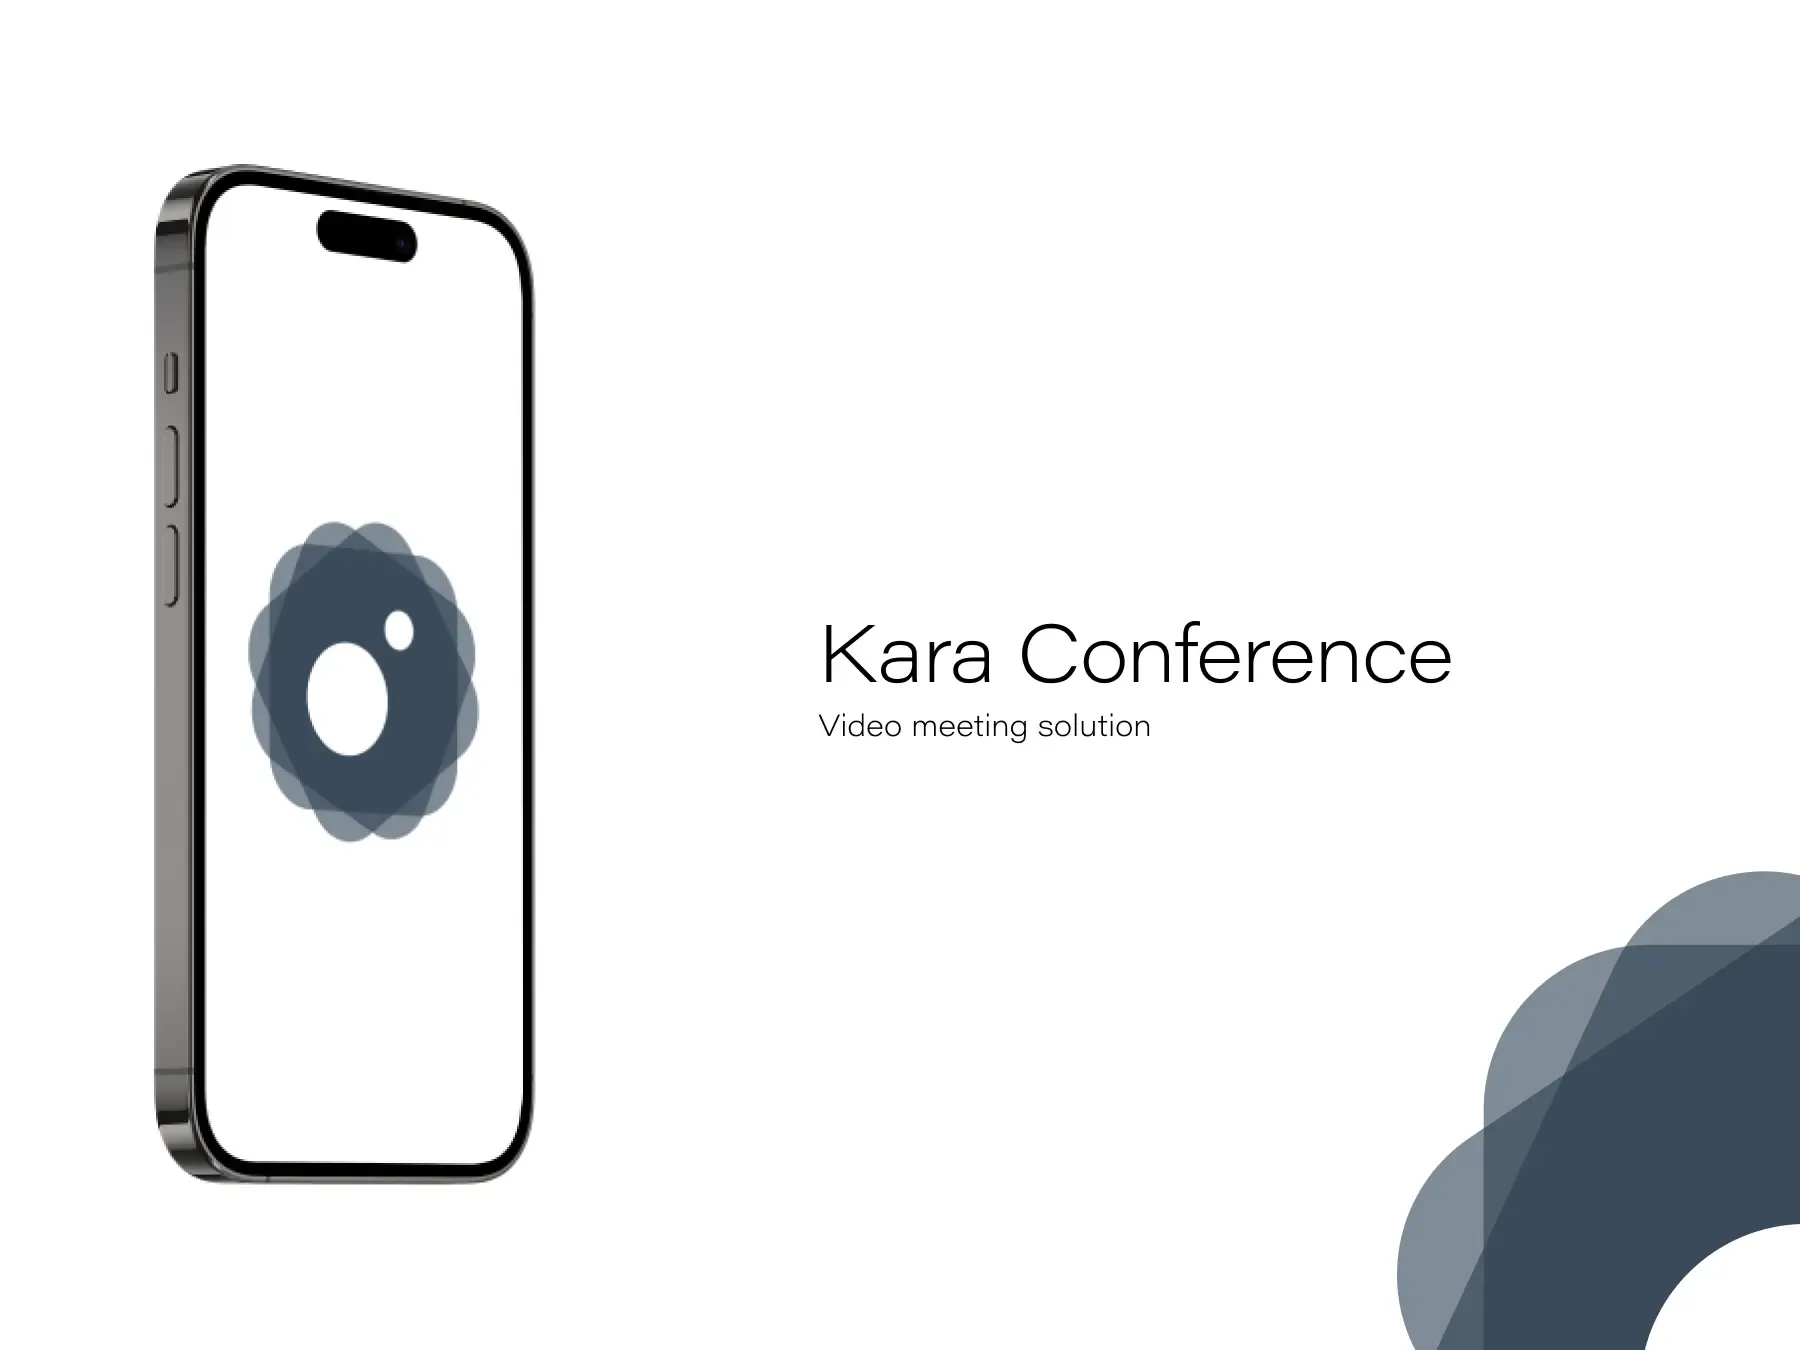 Kara Conference